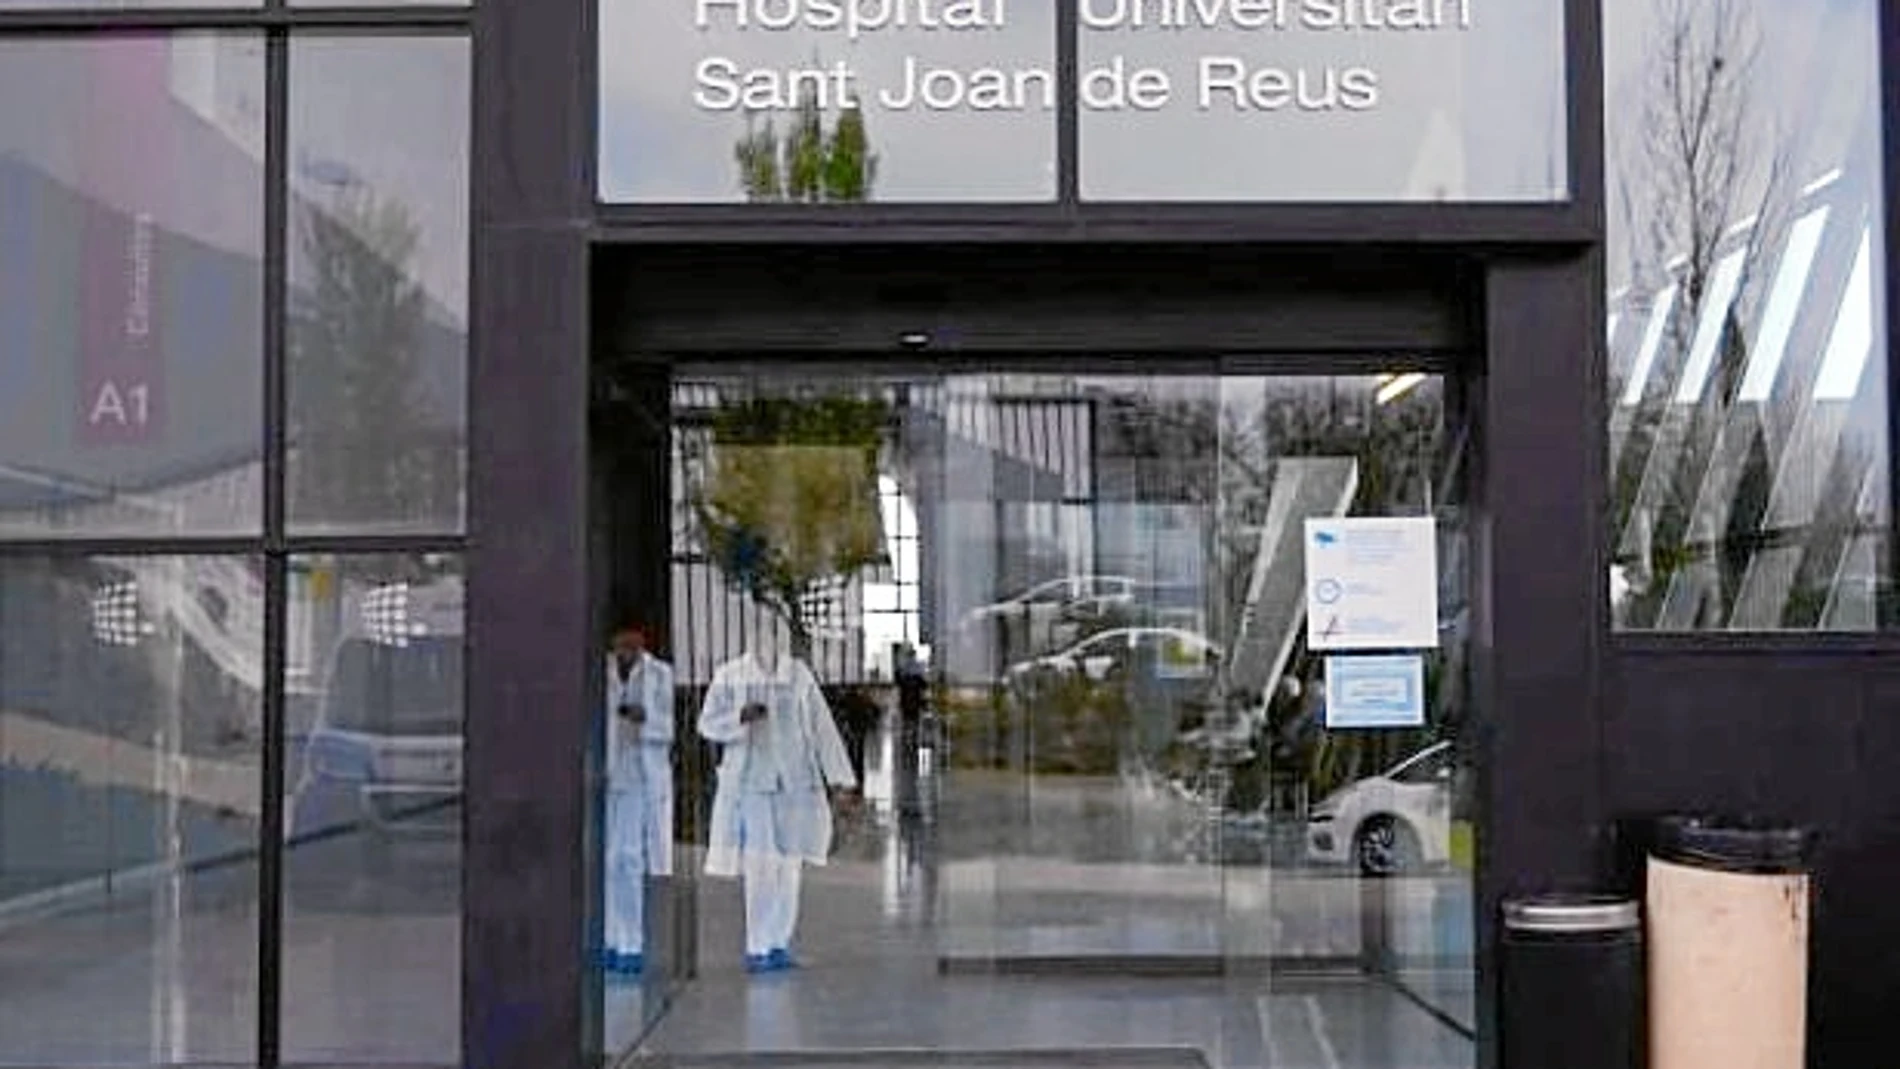 El Sant Joan de Reus, pionero en ofrecer terapia psicológica gratuita